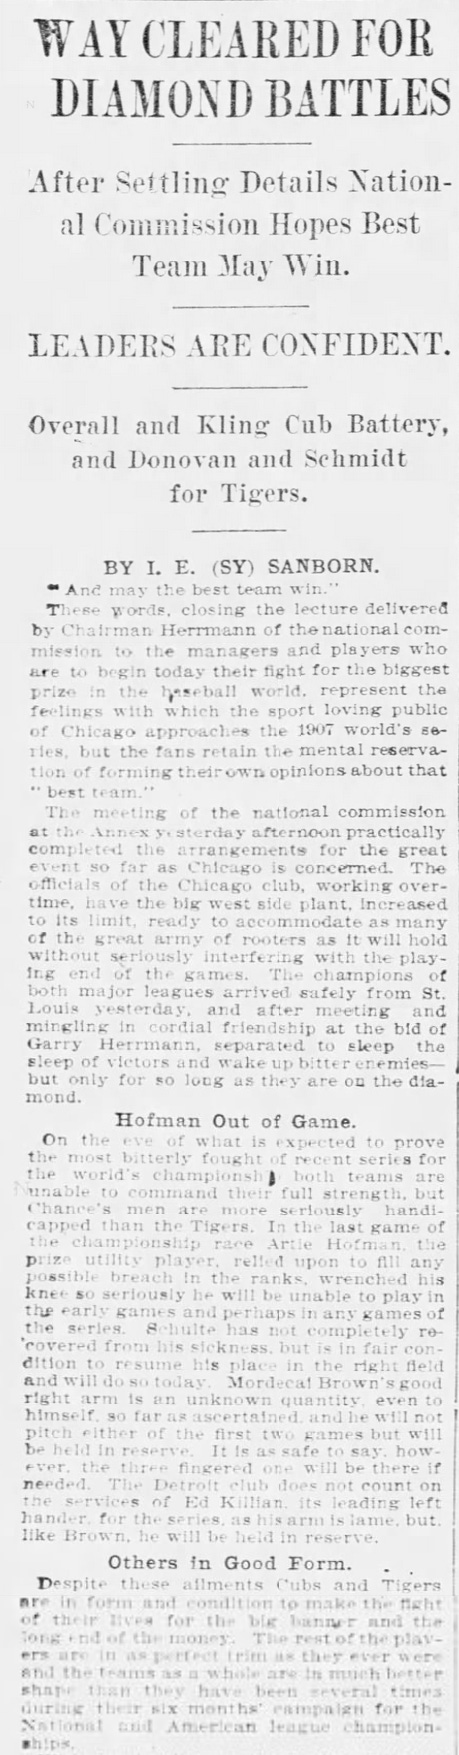 1907 Chicago Tribune